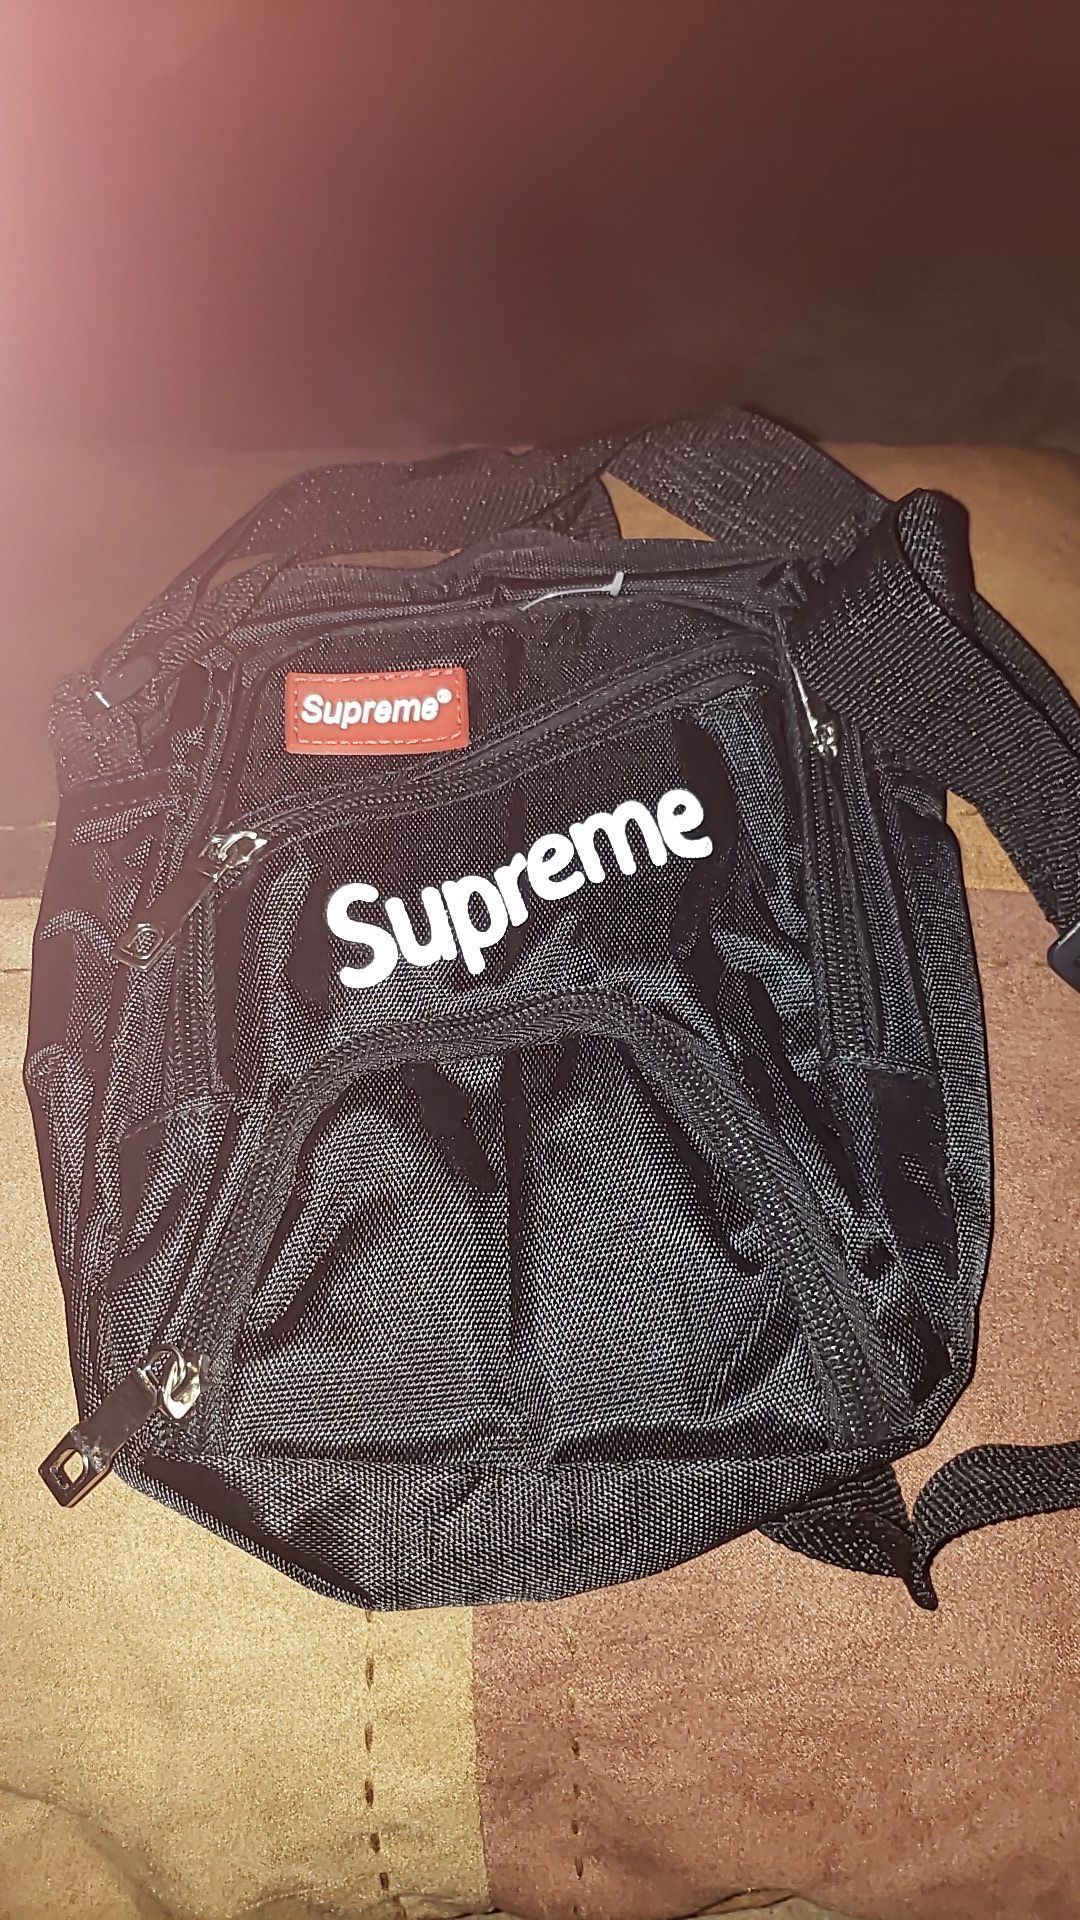 New Supreme Bag with no tag...Small messenger bag